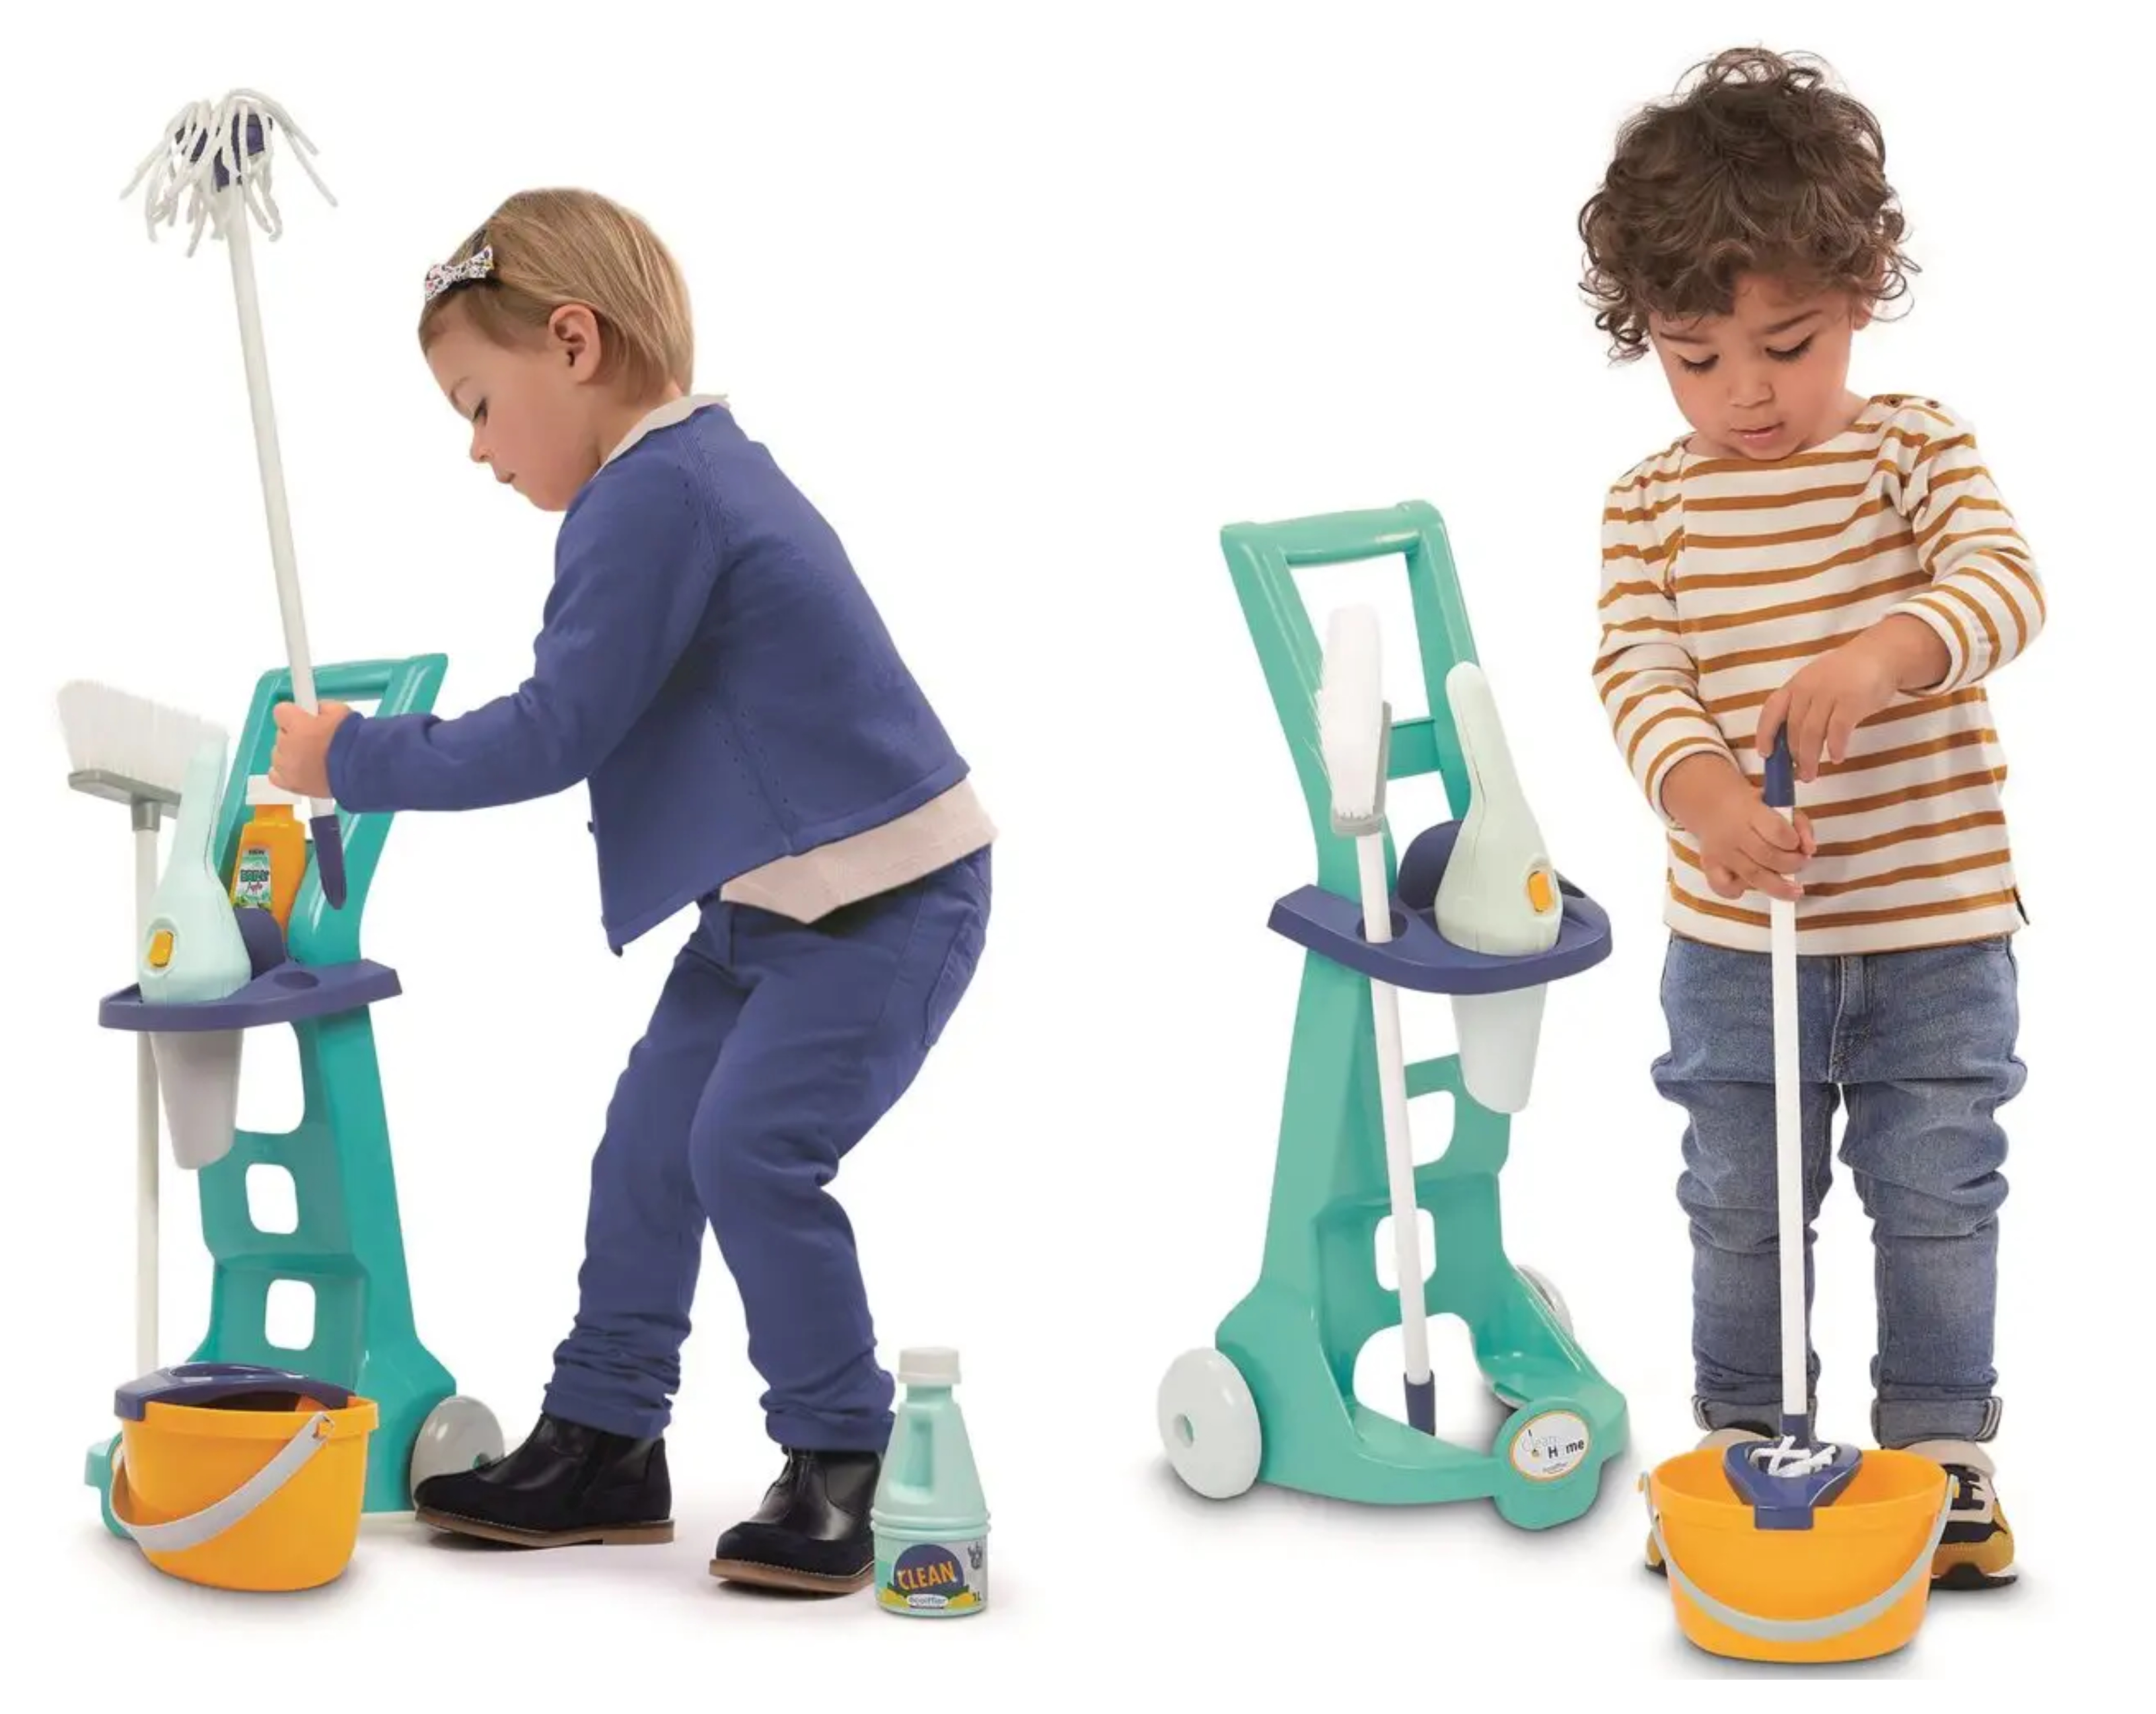 Dětský úklidový set Ecoiffier E 2769 představuje perfektní hračku pro děti od 3 let, která motivuje kluky i holky k domácím pracím.